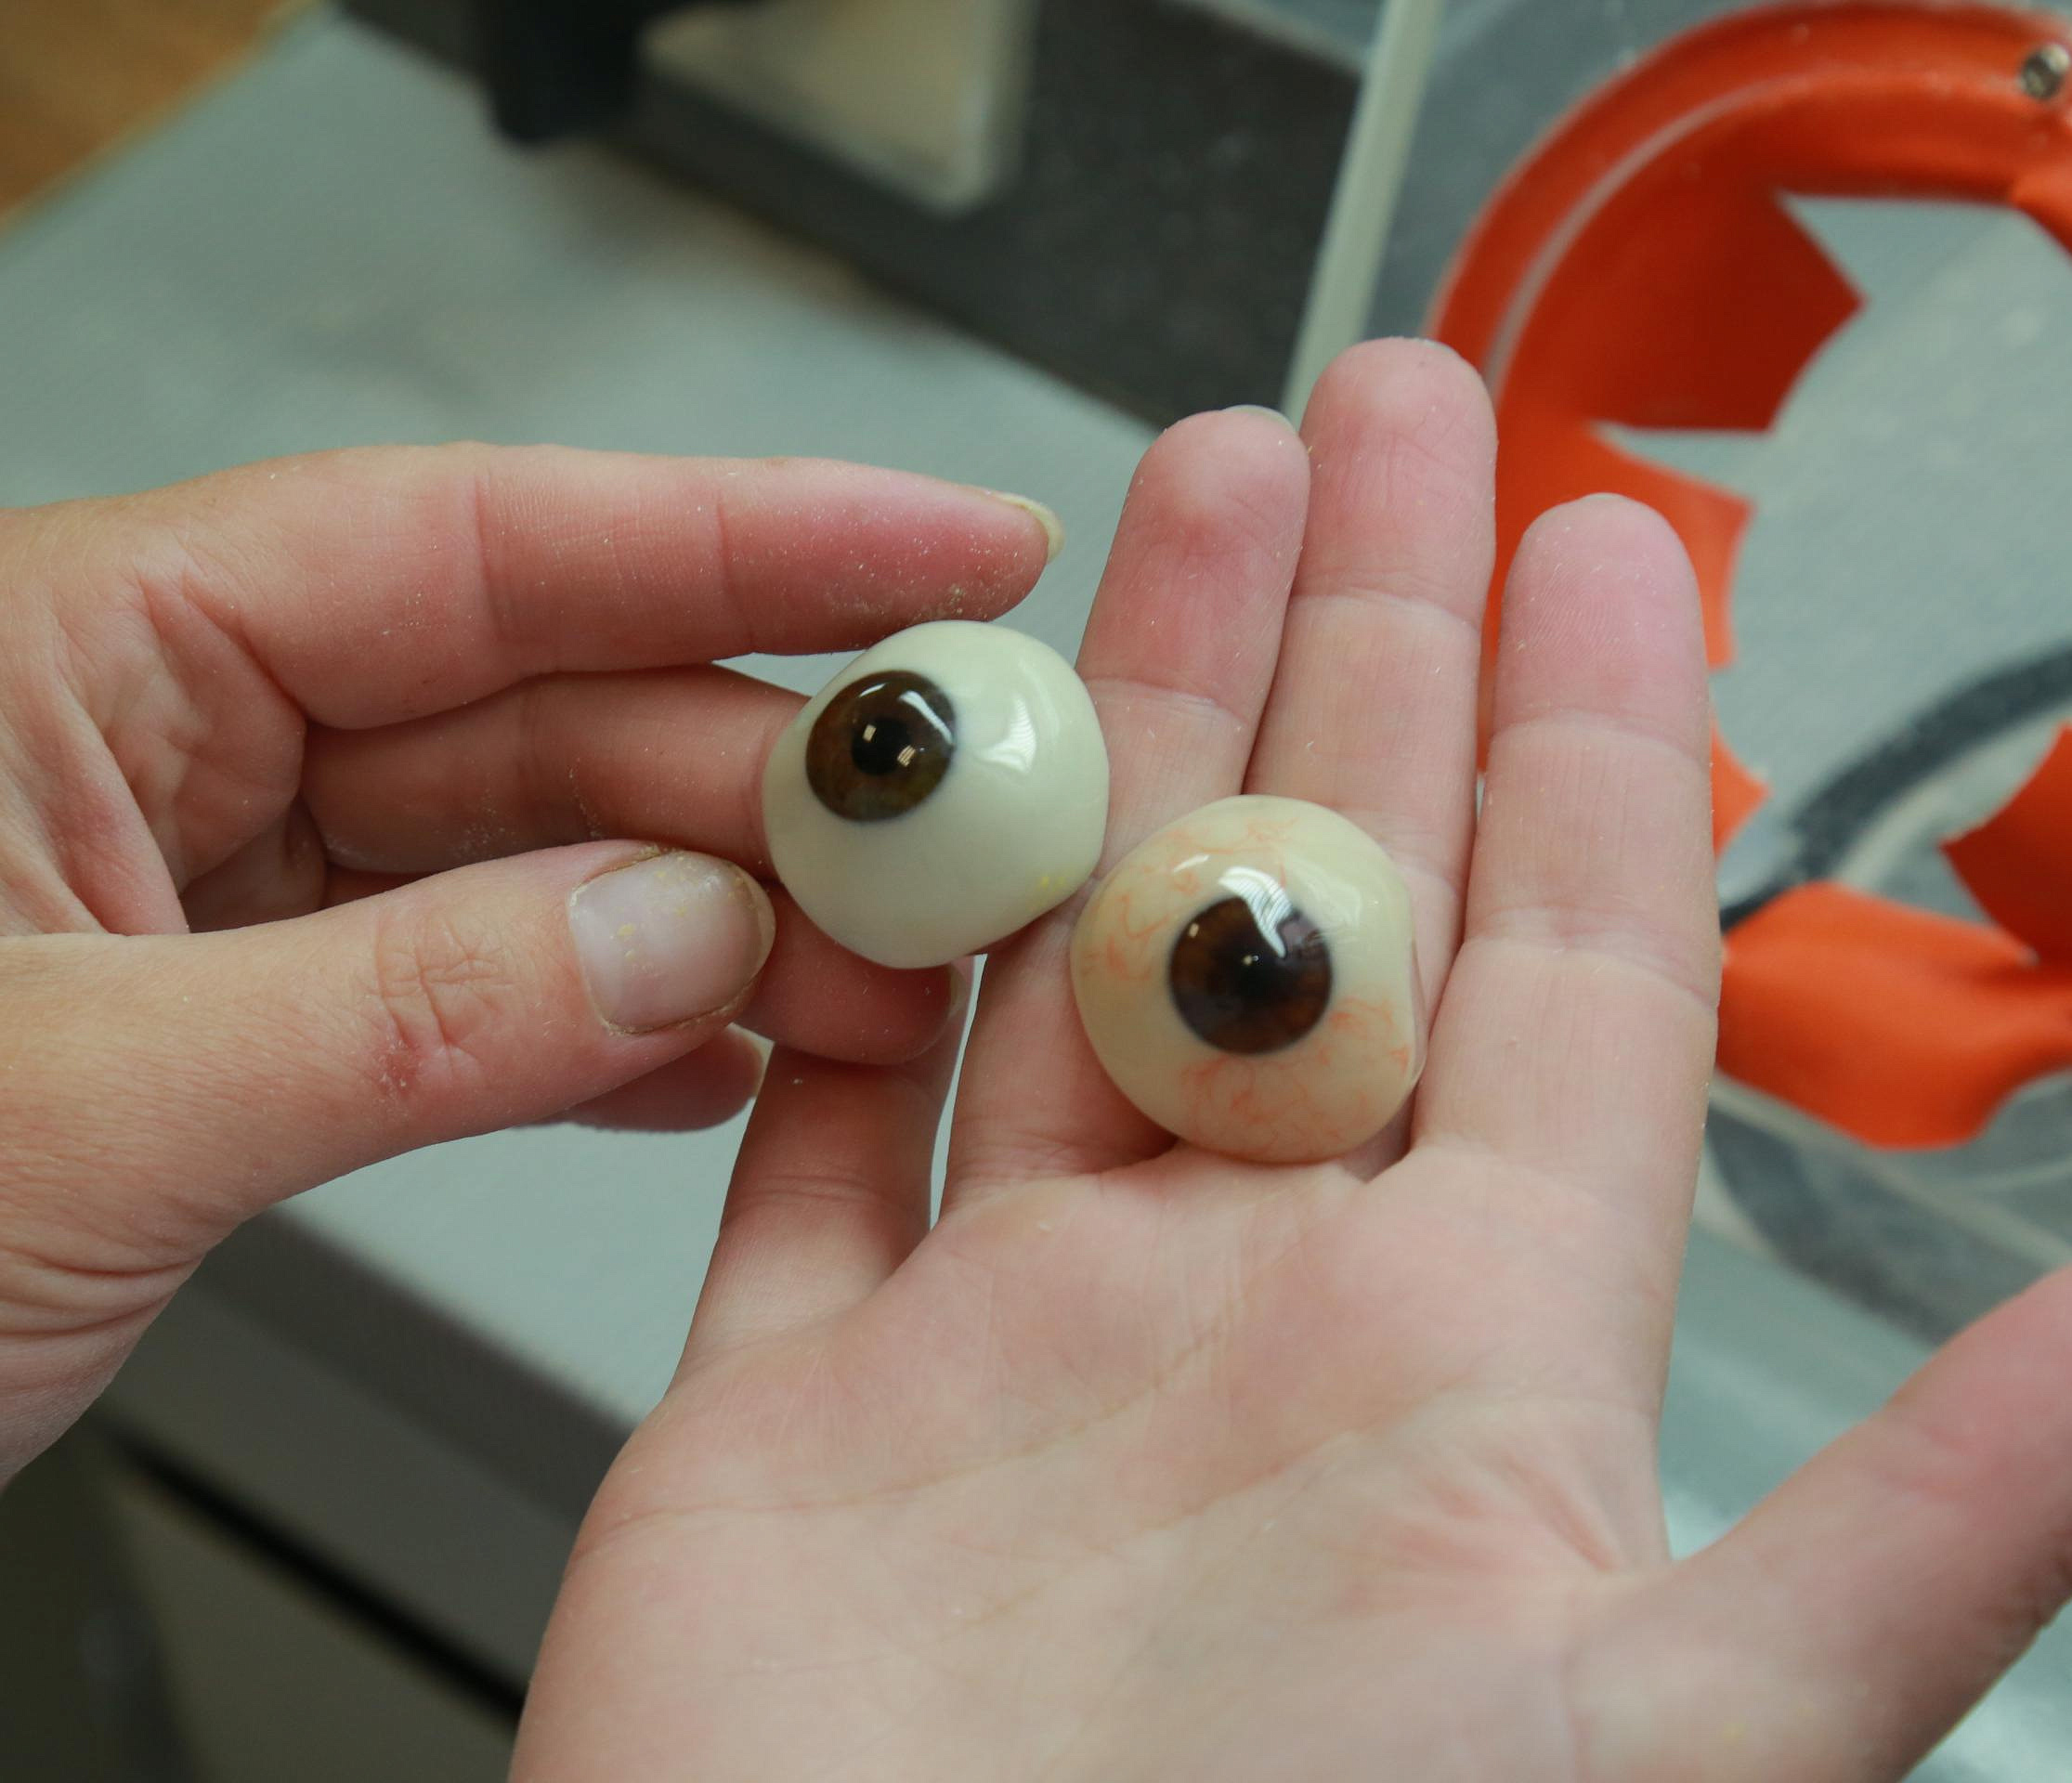 Повторить неповторимое: в Новосибирске делают уникальные глазные протезы